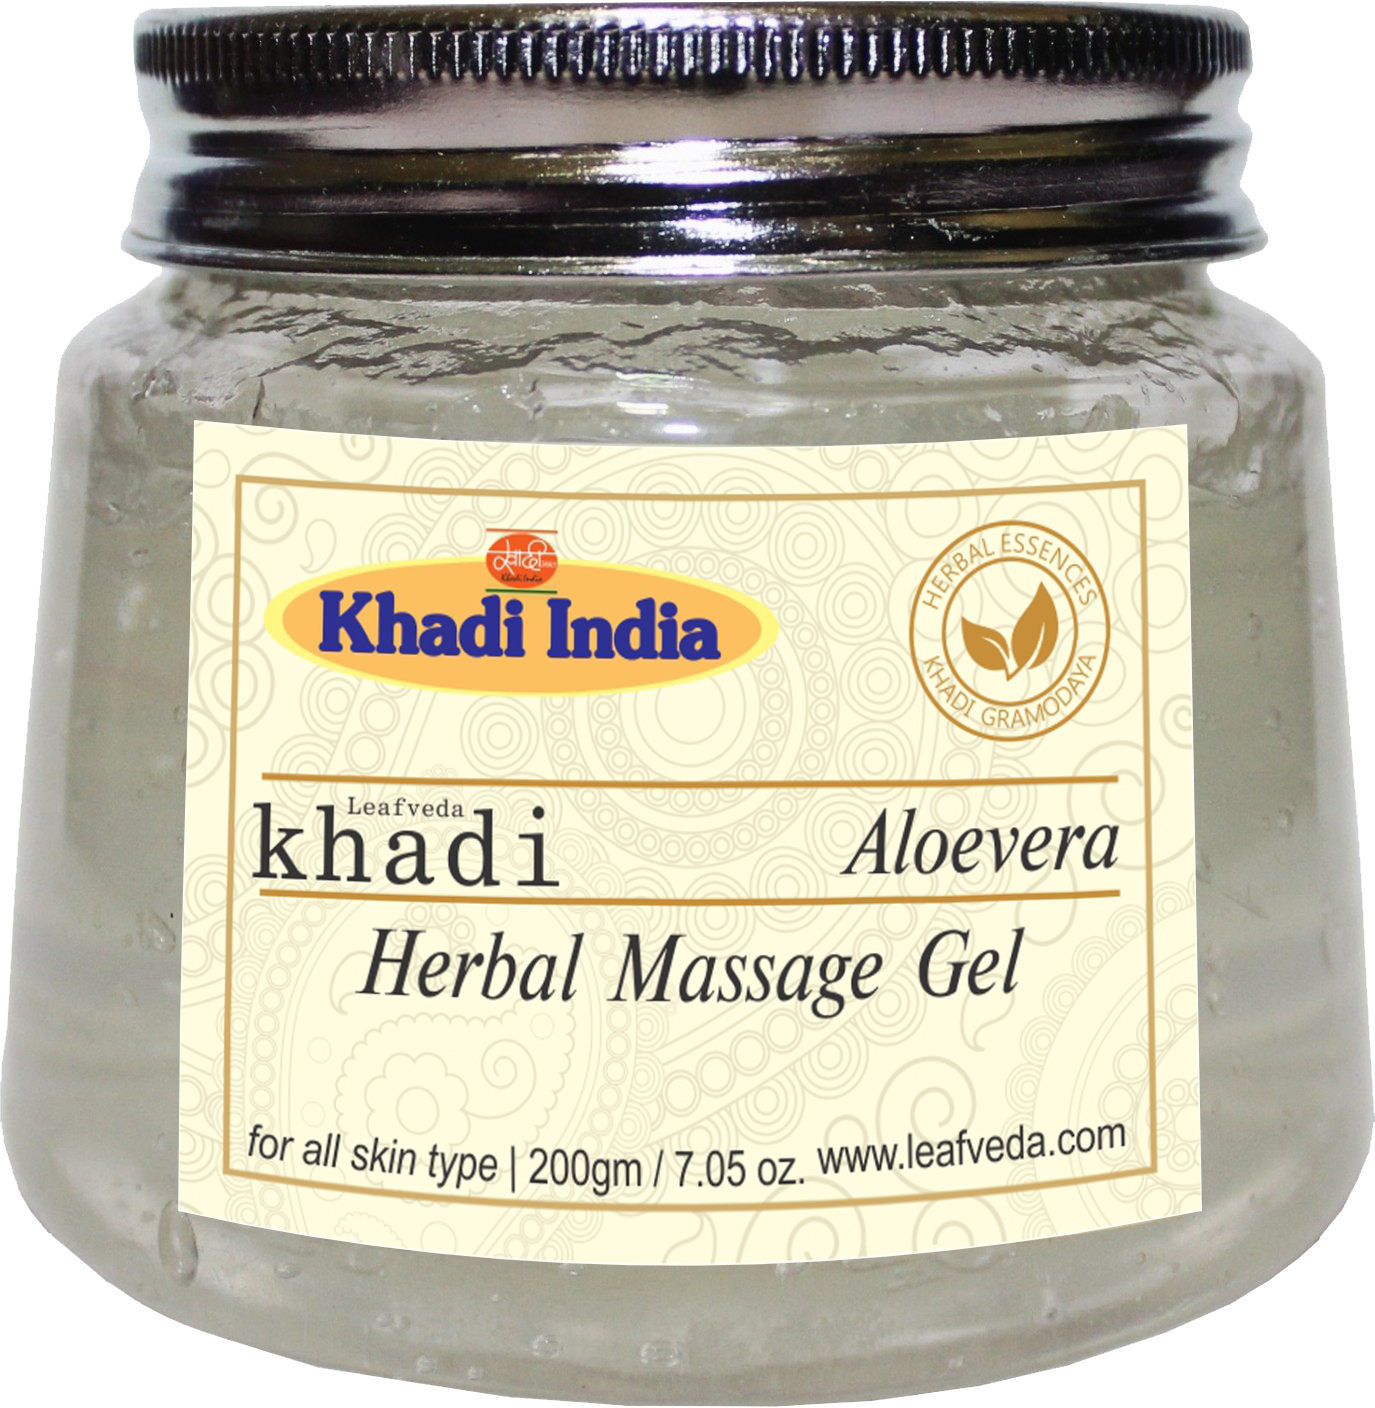 Khadi Natural Aloevera Gel